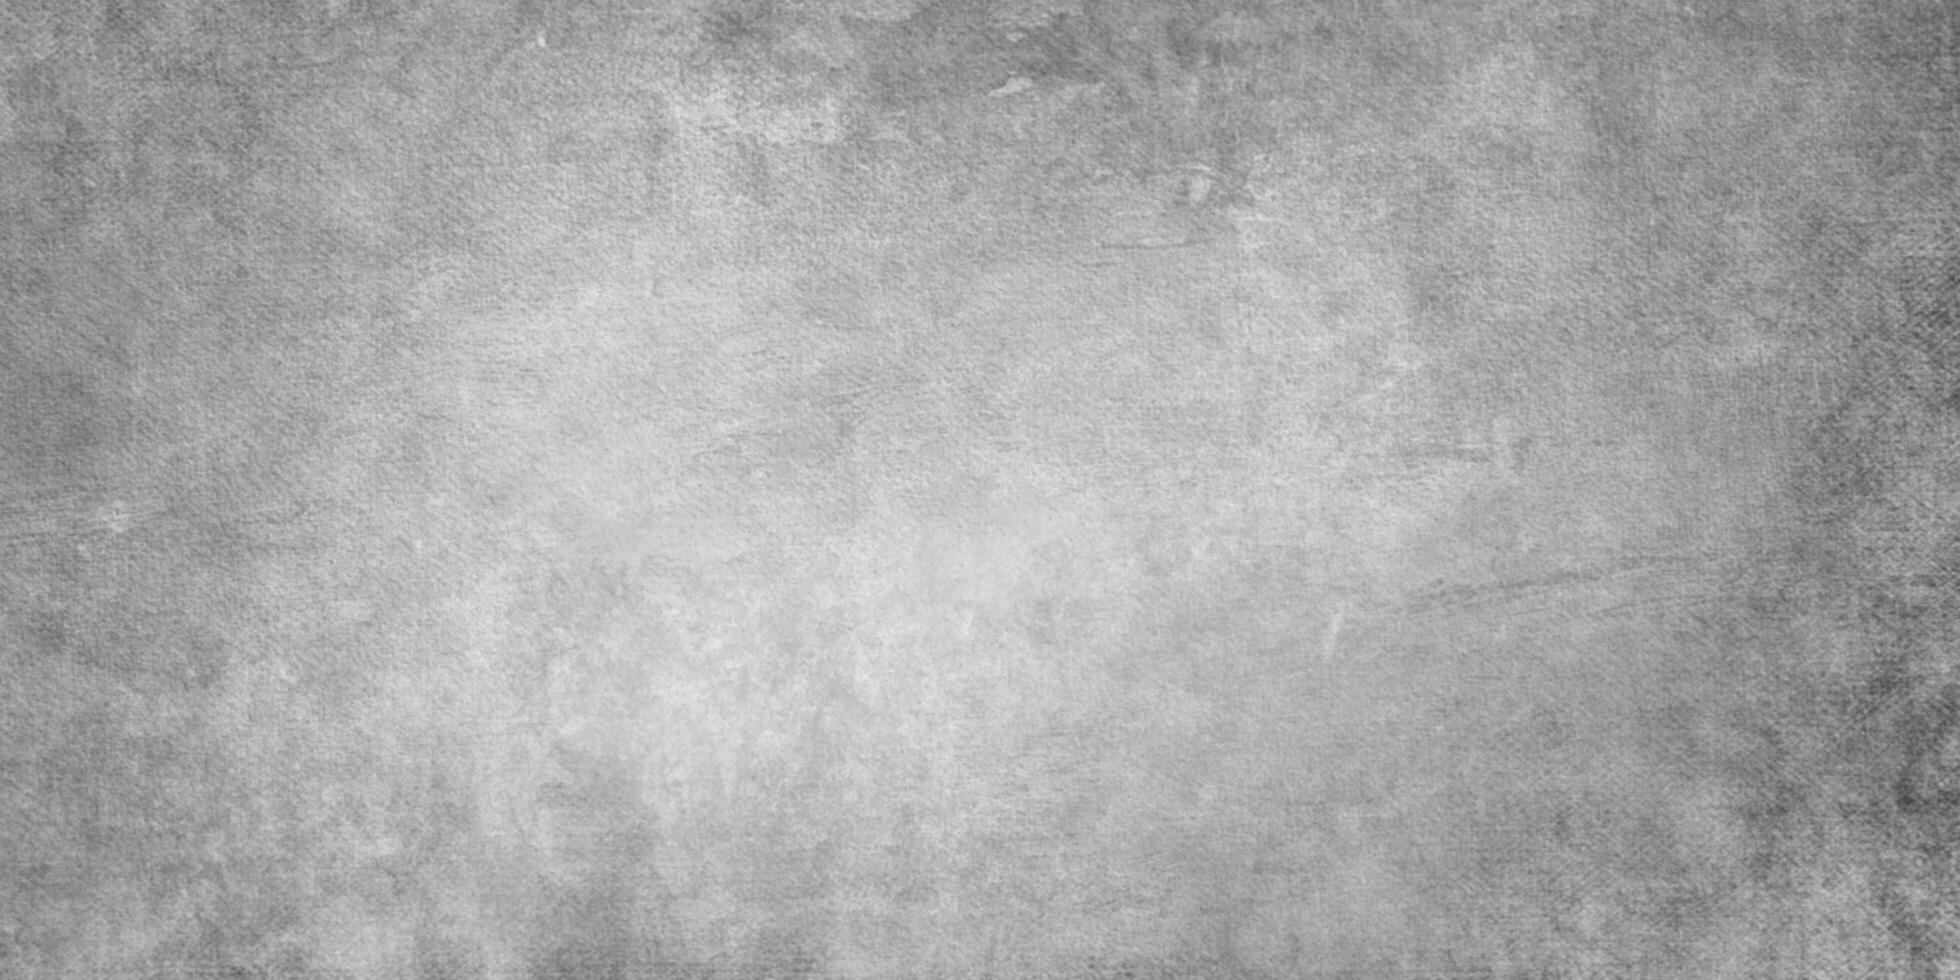 donker zwart grunge getextureerde schoolbord of schoolbord, monochroom leisteen grunge beton muur of gips, verontrust bedekking beton asfalt textuur, korrelig oud verontrust grunge achtergrond in zwart. foto